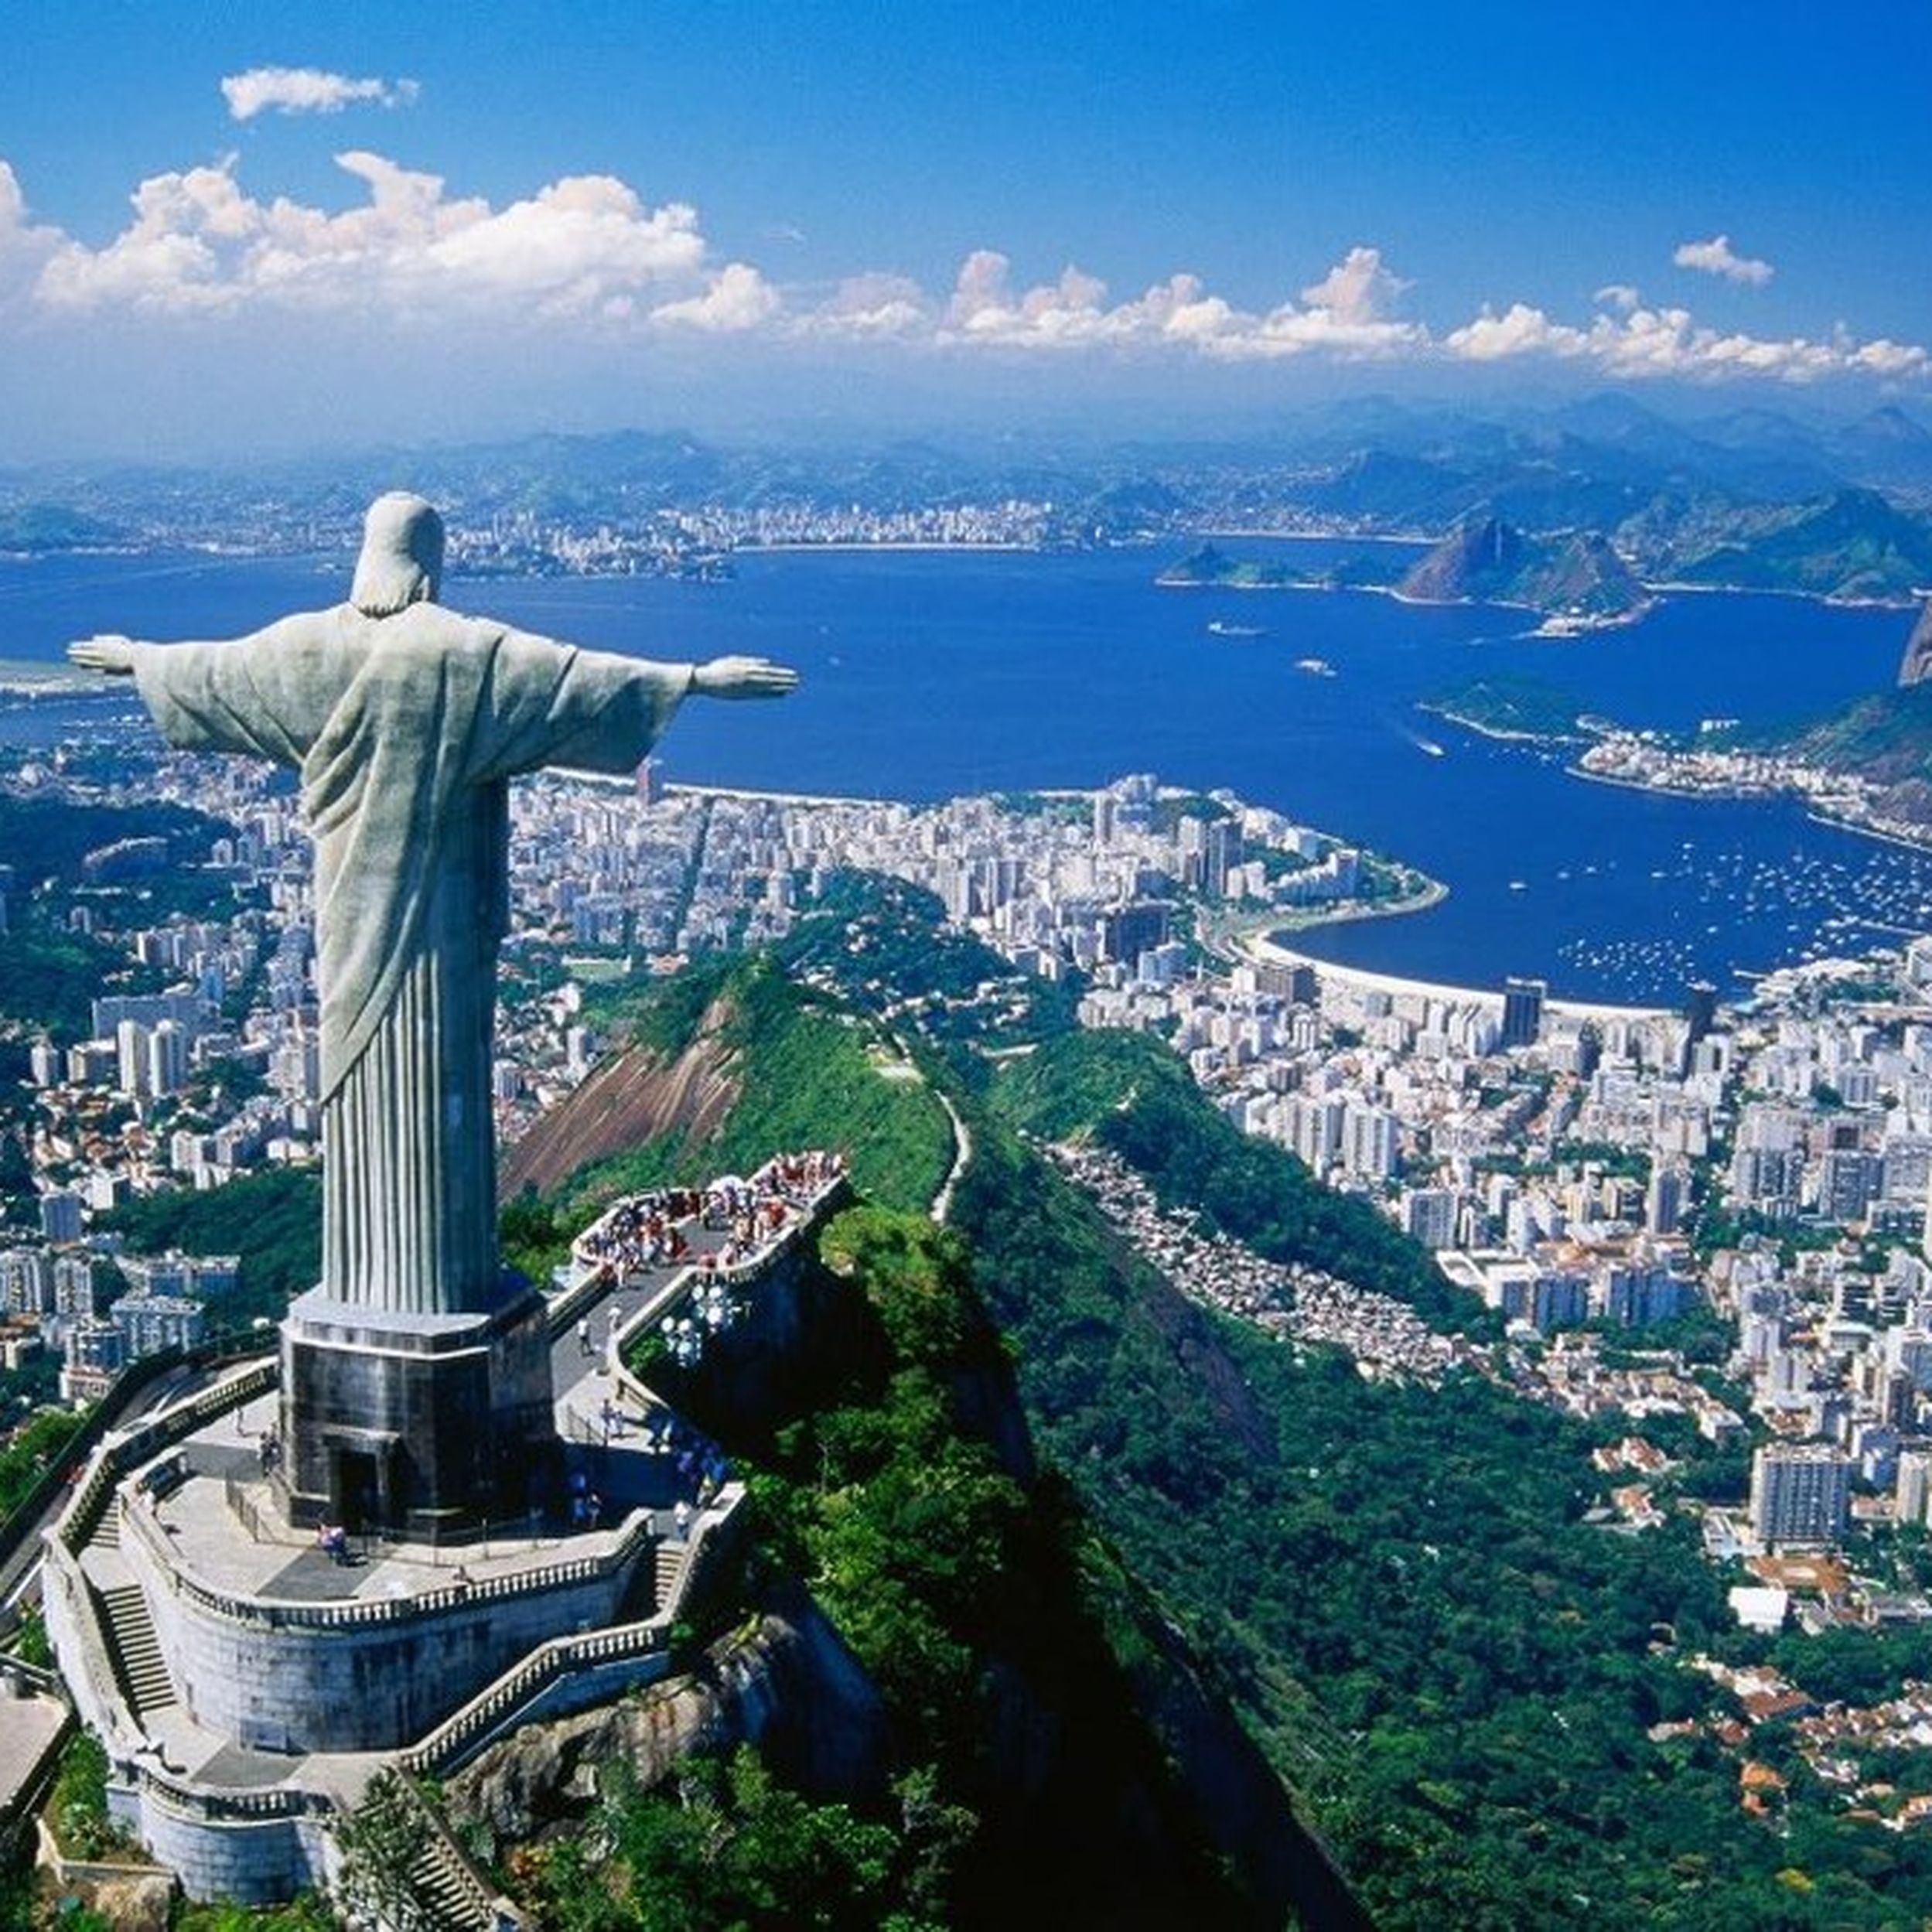 Достопримечательности каждой страны. Бразилия Рио де Жанейро. Корковадо Рио-де-Жанейро. Буэнос Айрес статуя Христа. Южная Америка Рио де Жанейро.